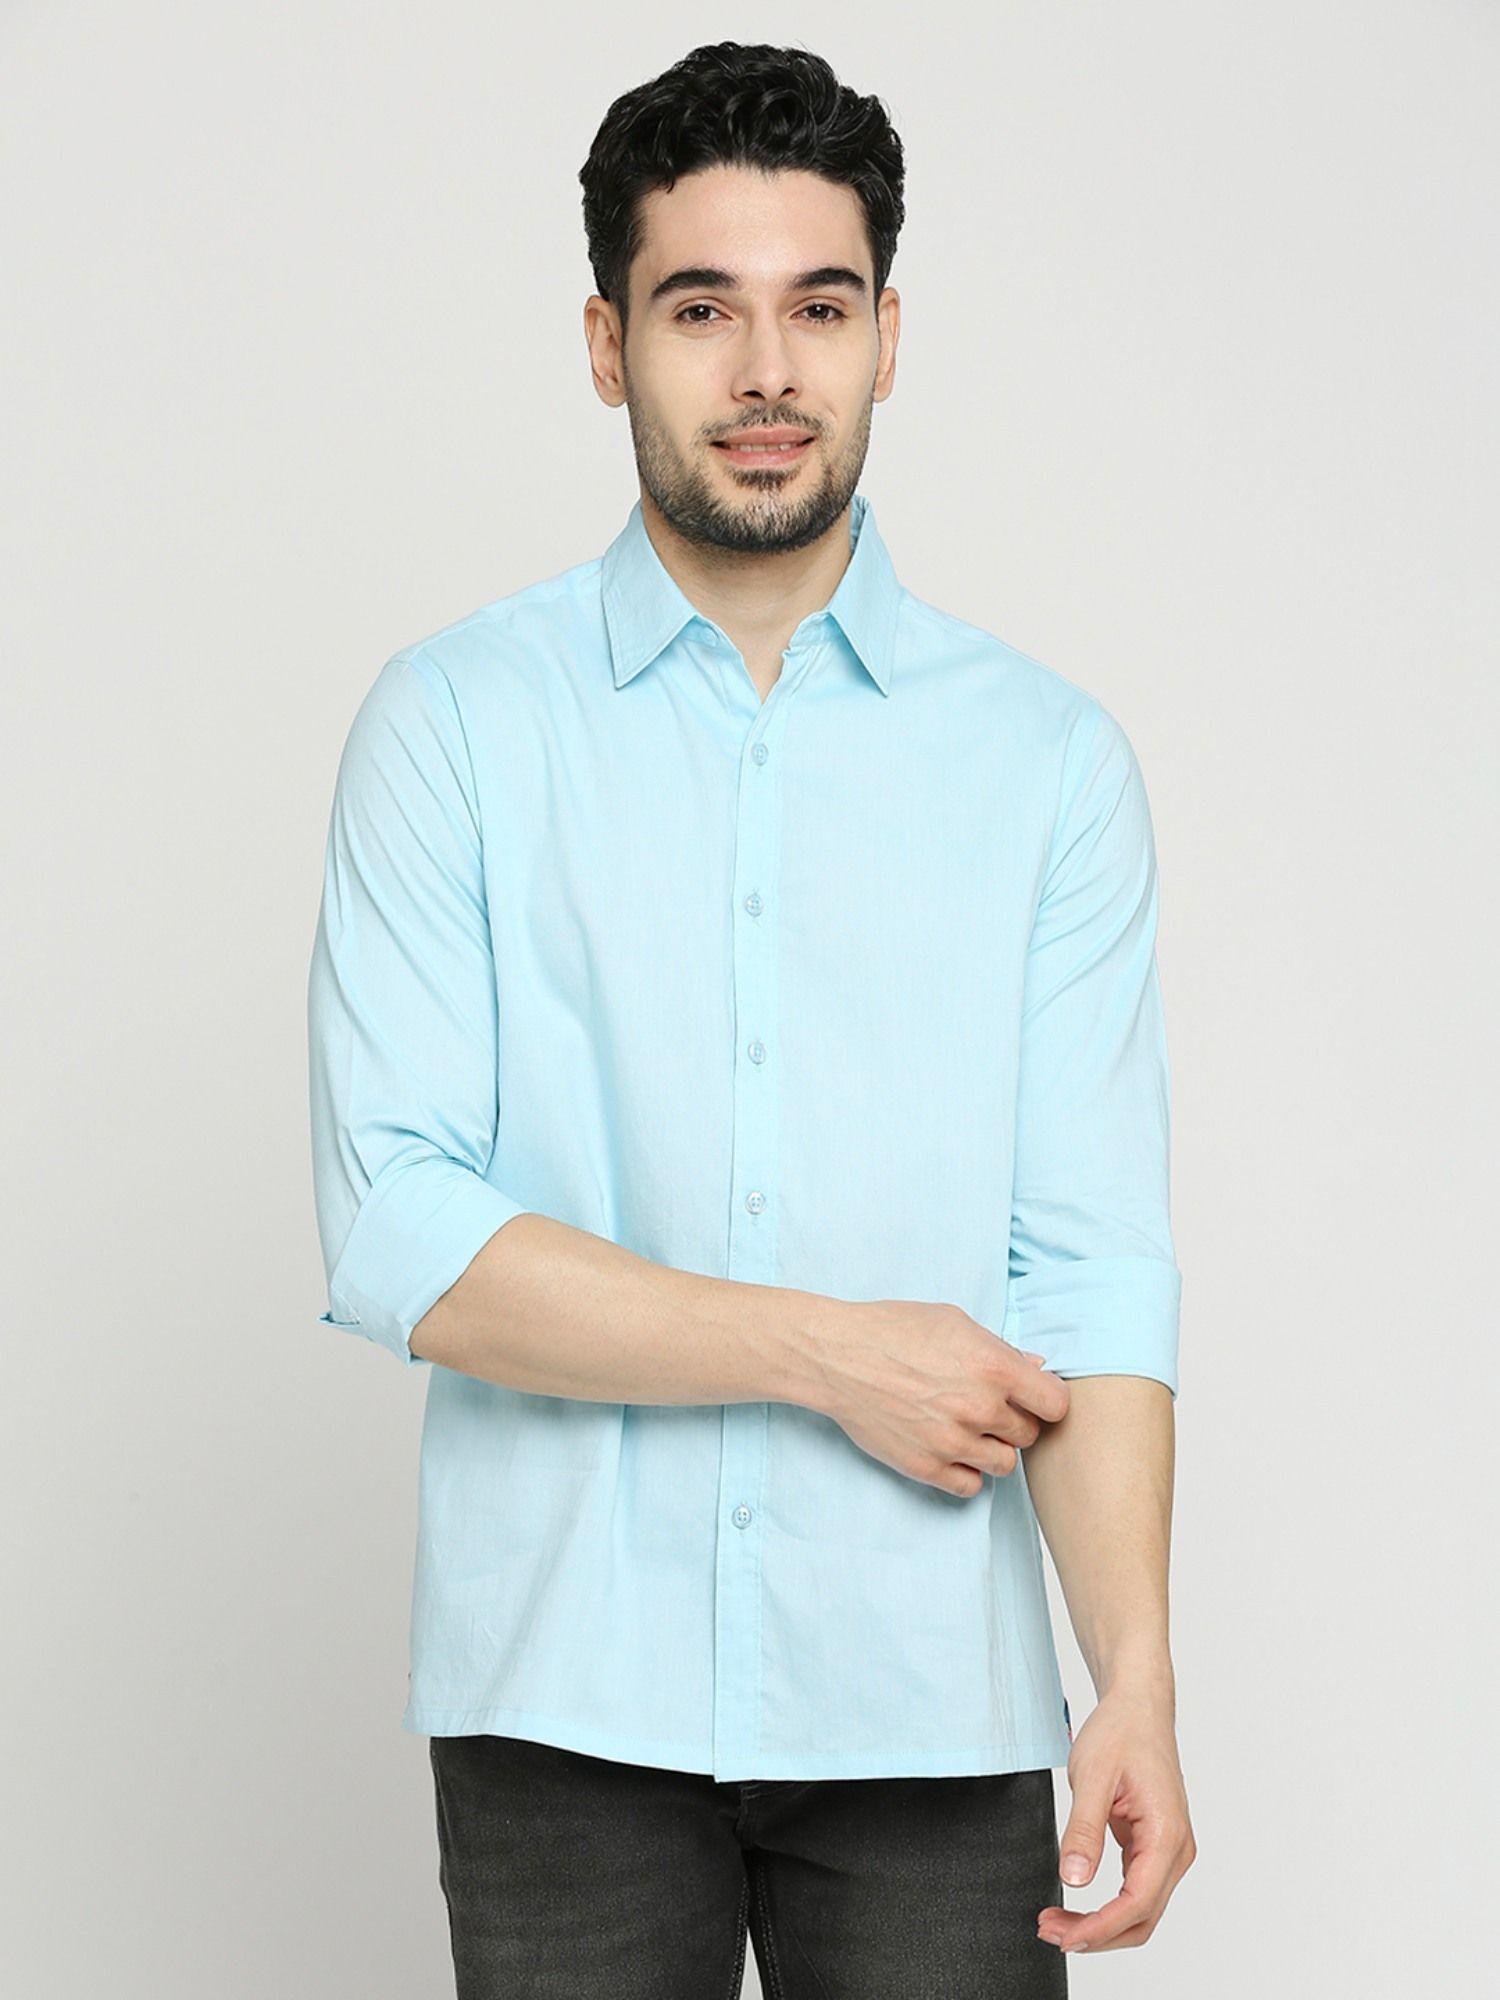 men's solid full sleeves regular fit spread collar shirt